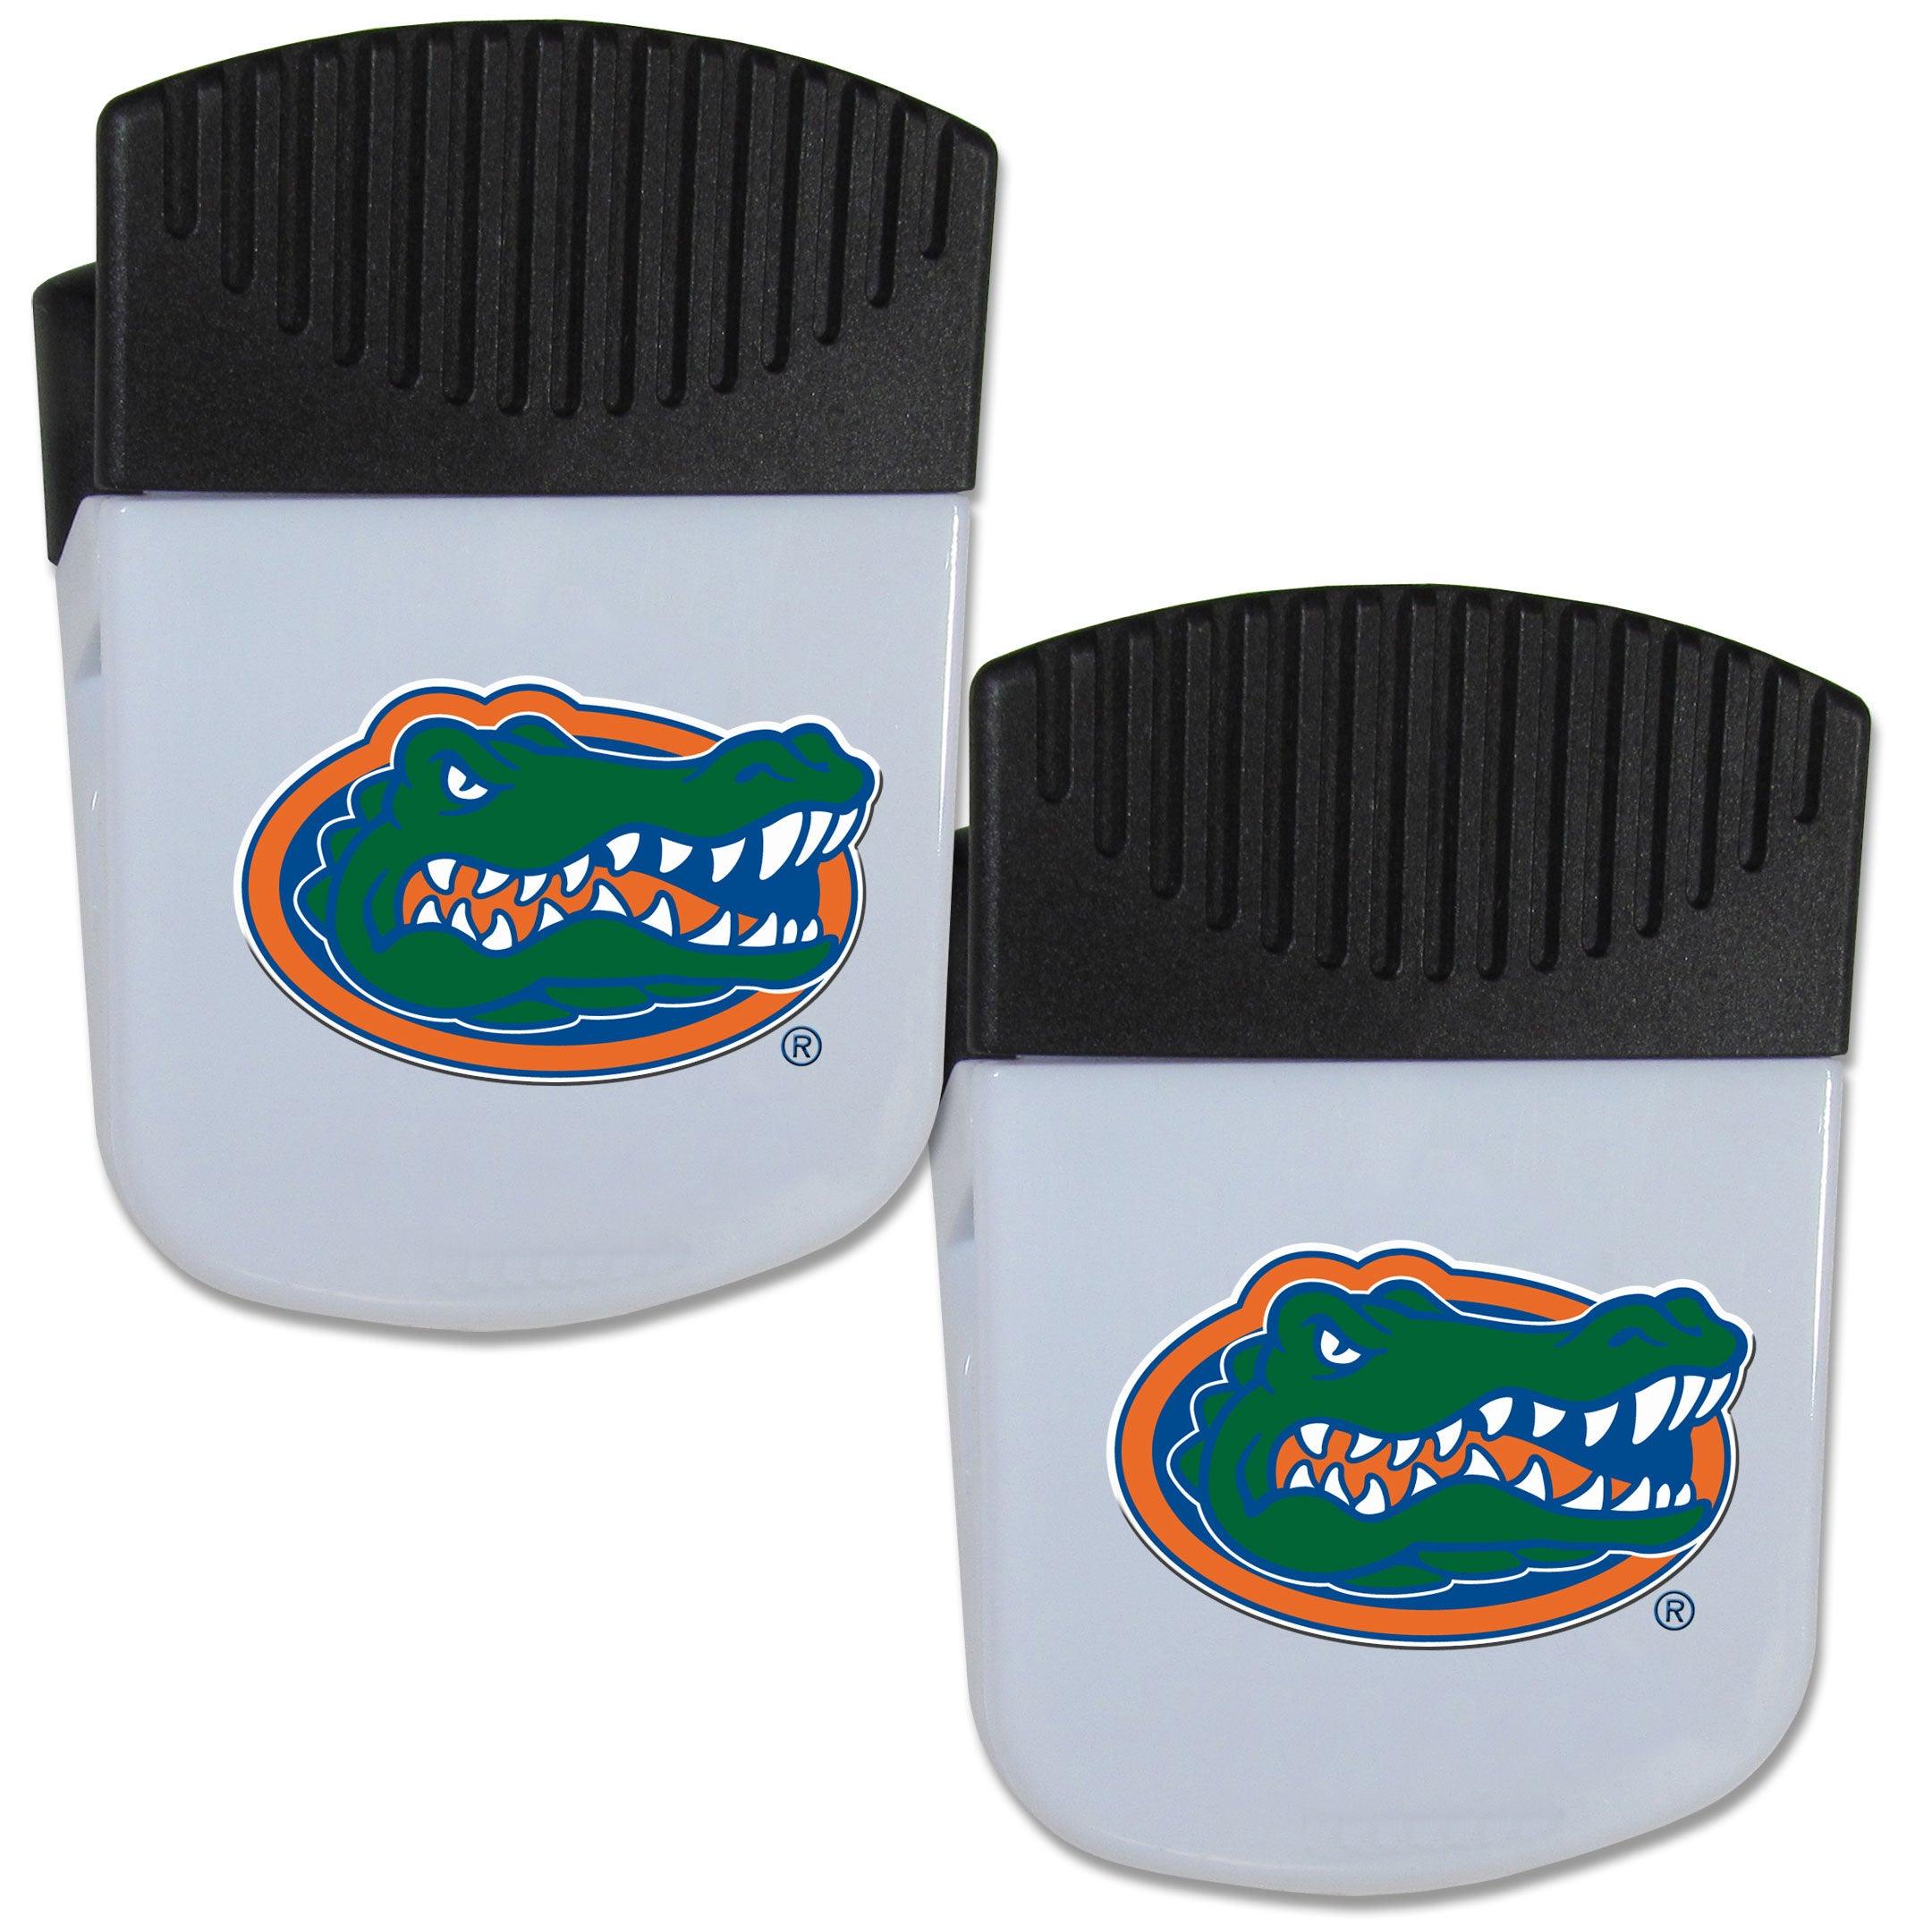 Florida Gators Chip Clip Magnet with Bottle Opener, 2 pack - Flyclothing LLC